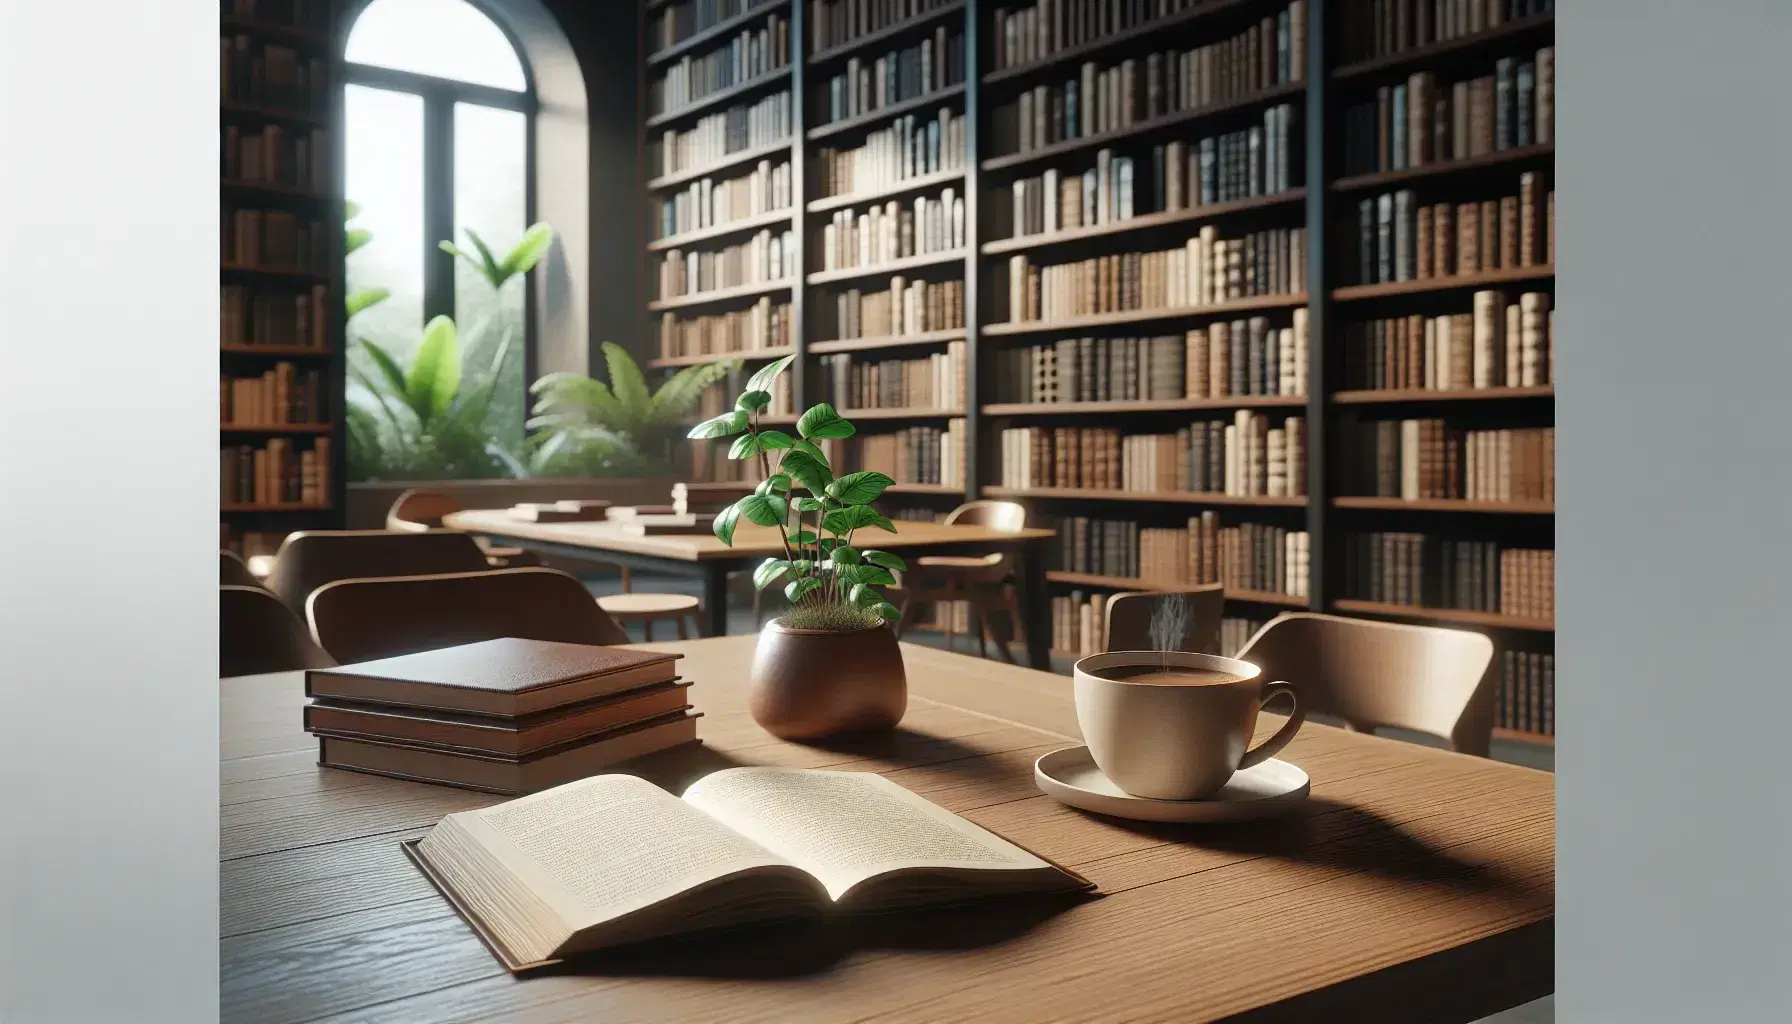 Biblioteca acogedora con estantes de madera llenos de libros, mesa con libro abierto, taza de café humeante y planta verde, luz natural entrando por ventana.